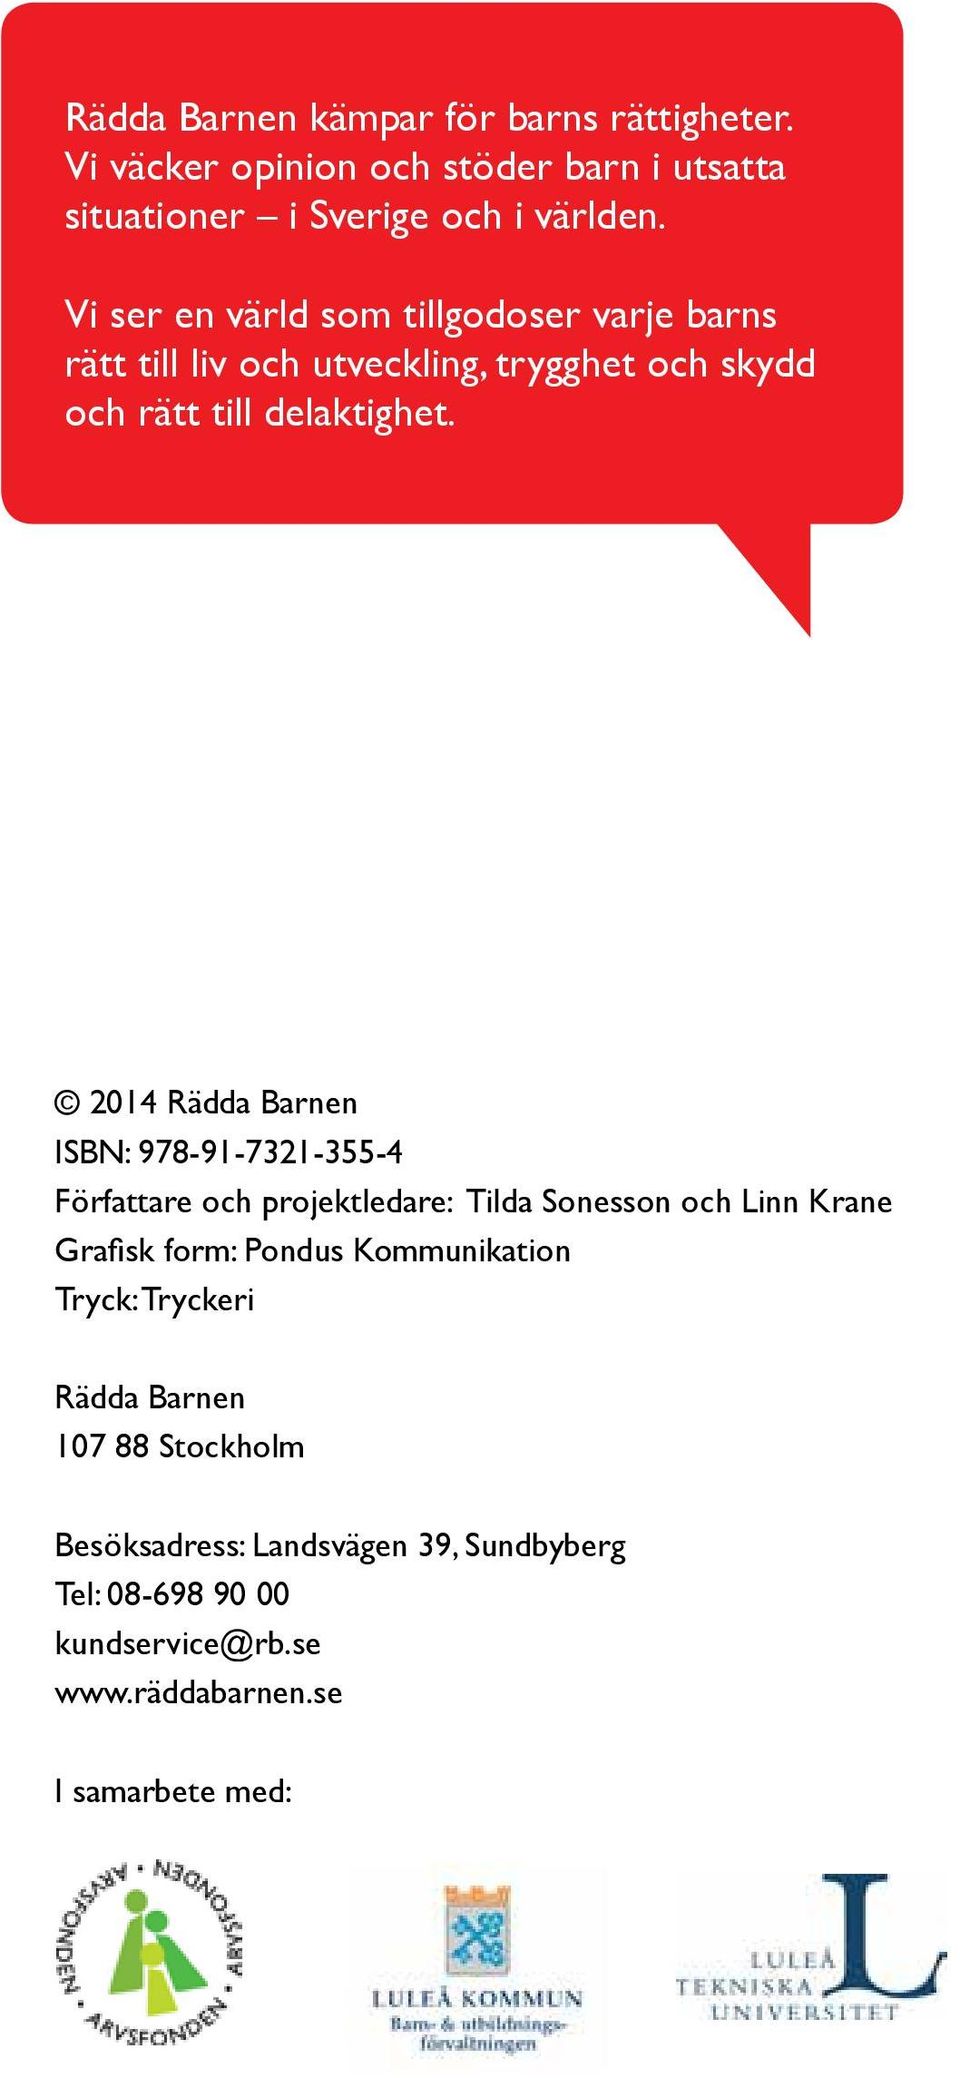 2014 Rädda Barnen ISBN: 978-91-7321-355-4 Författare och projektledare: Tilda Sonesson och Linn Krane Grafisk form: Pondus